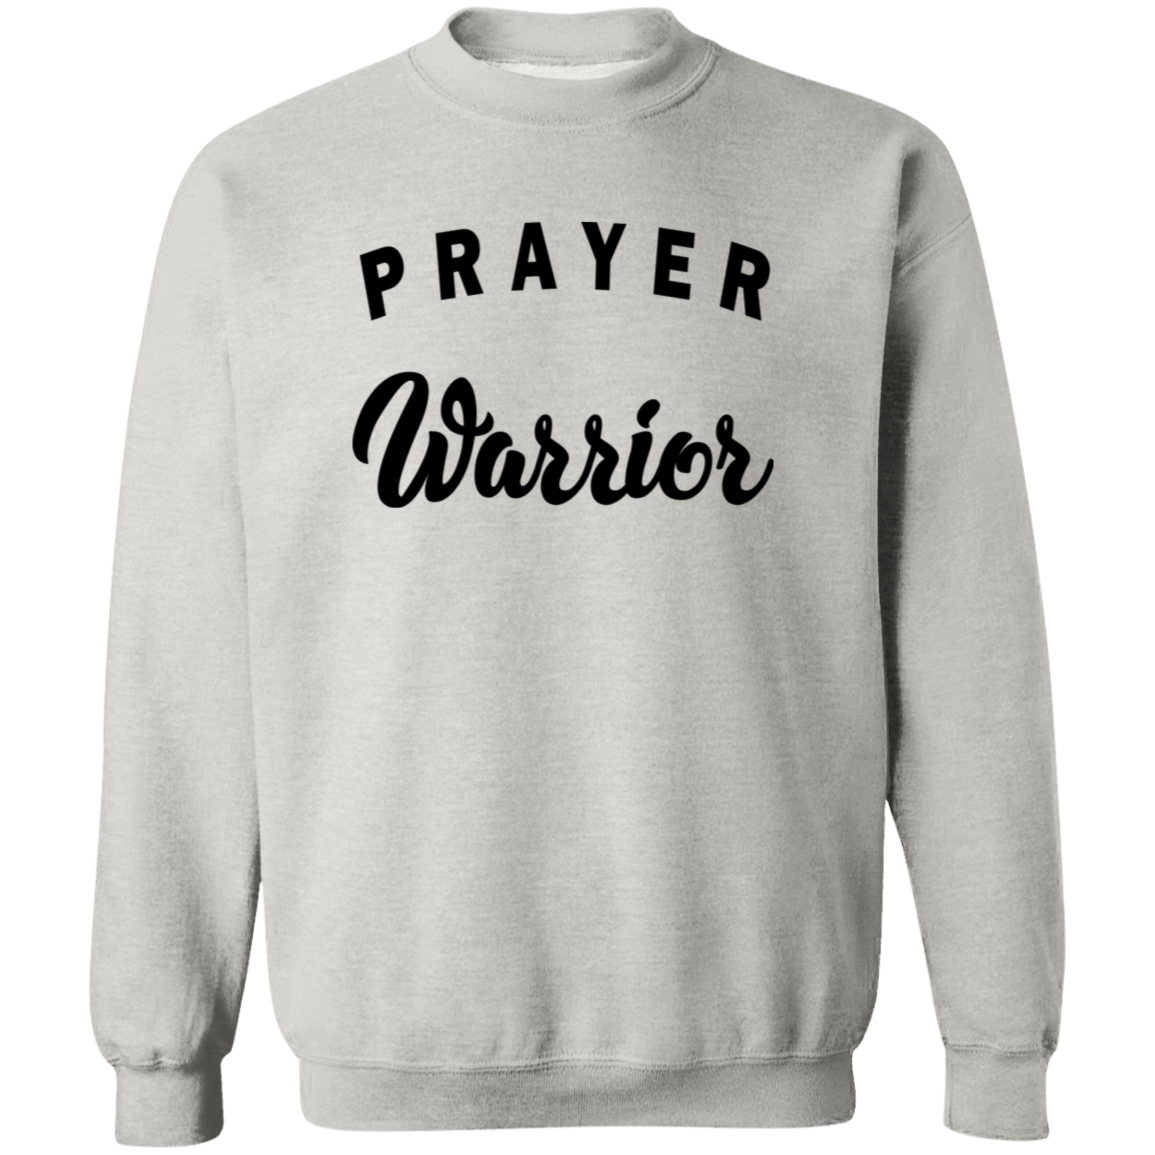 Prayer Warrior G180 Crewneck Pullover Sweatshirt